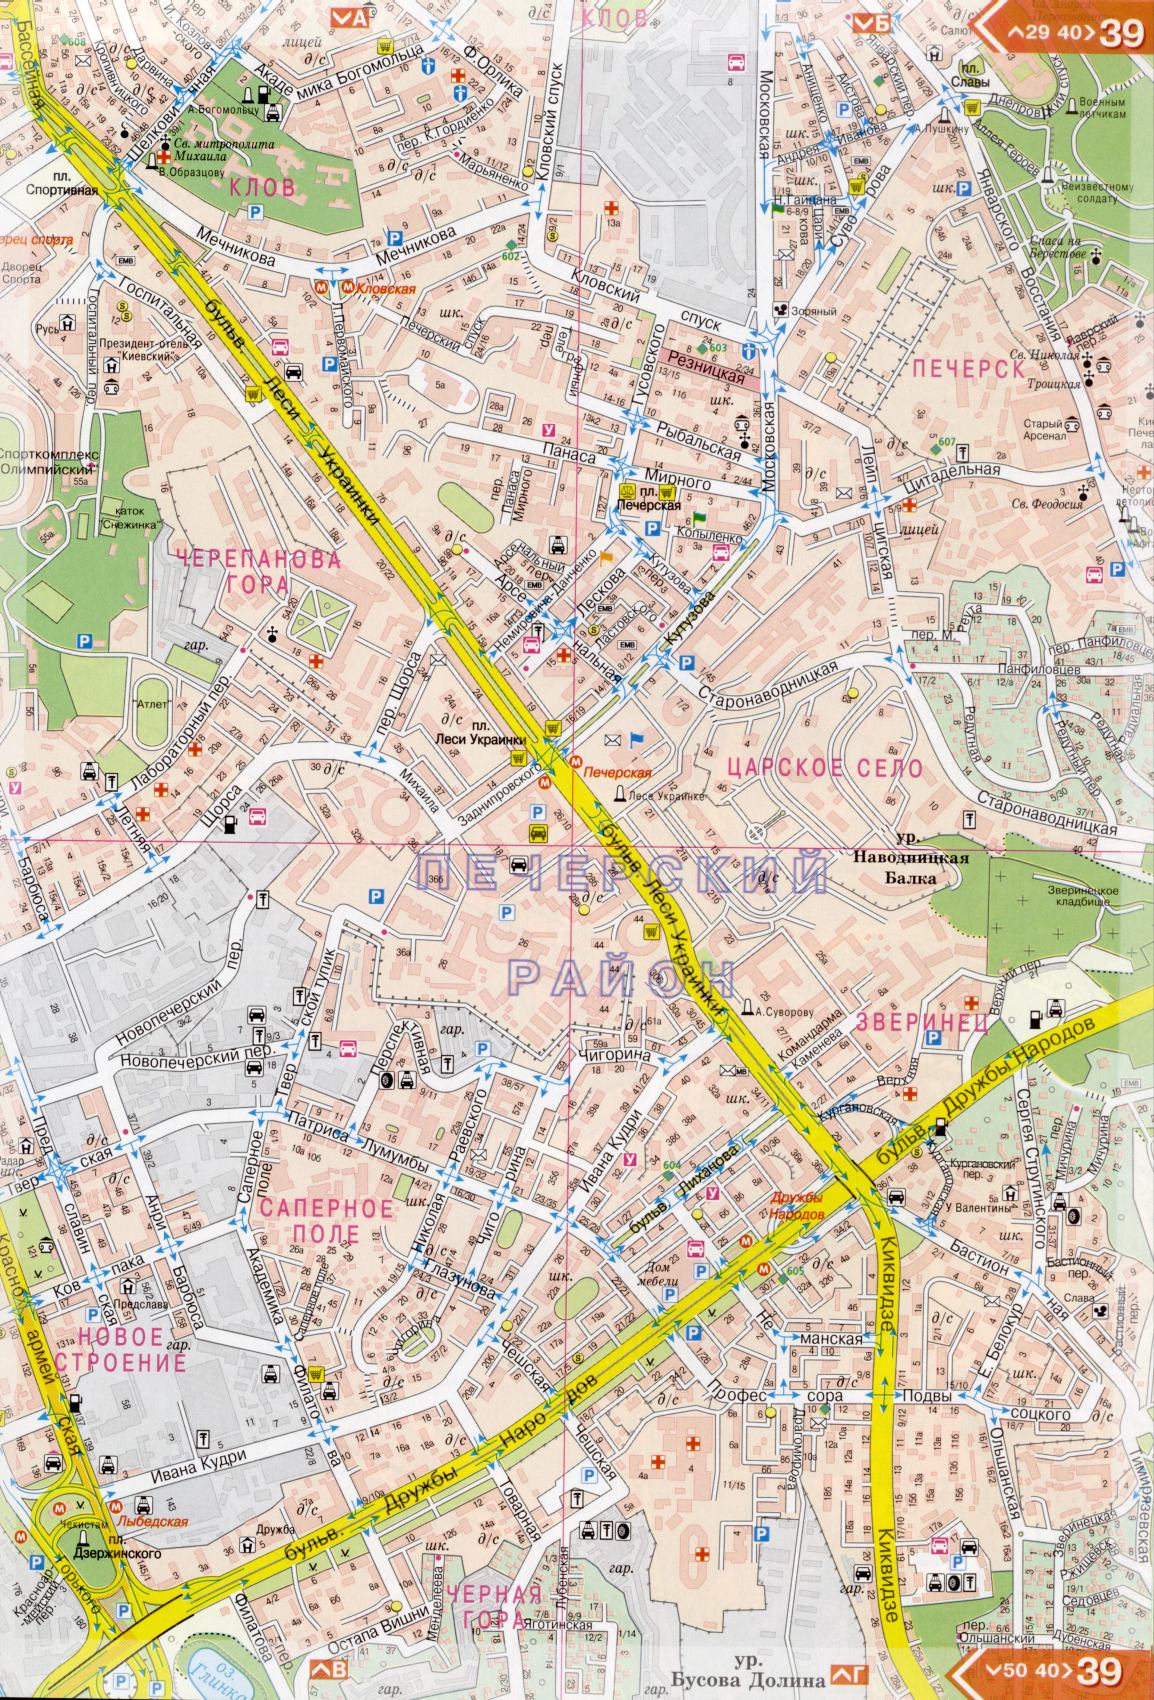 Карта Киева подробная в 1см=150м на 45 листах. Карта г.Киев из атласа автомобильных дорог. Скачать бесплатно подробную карту , F3